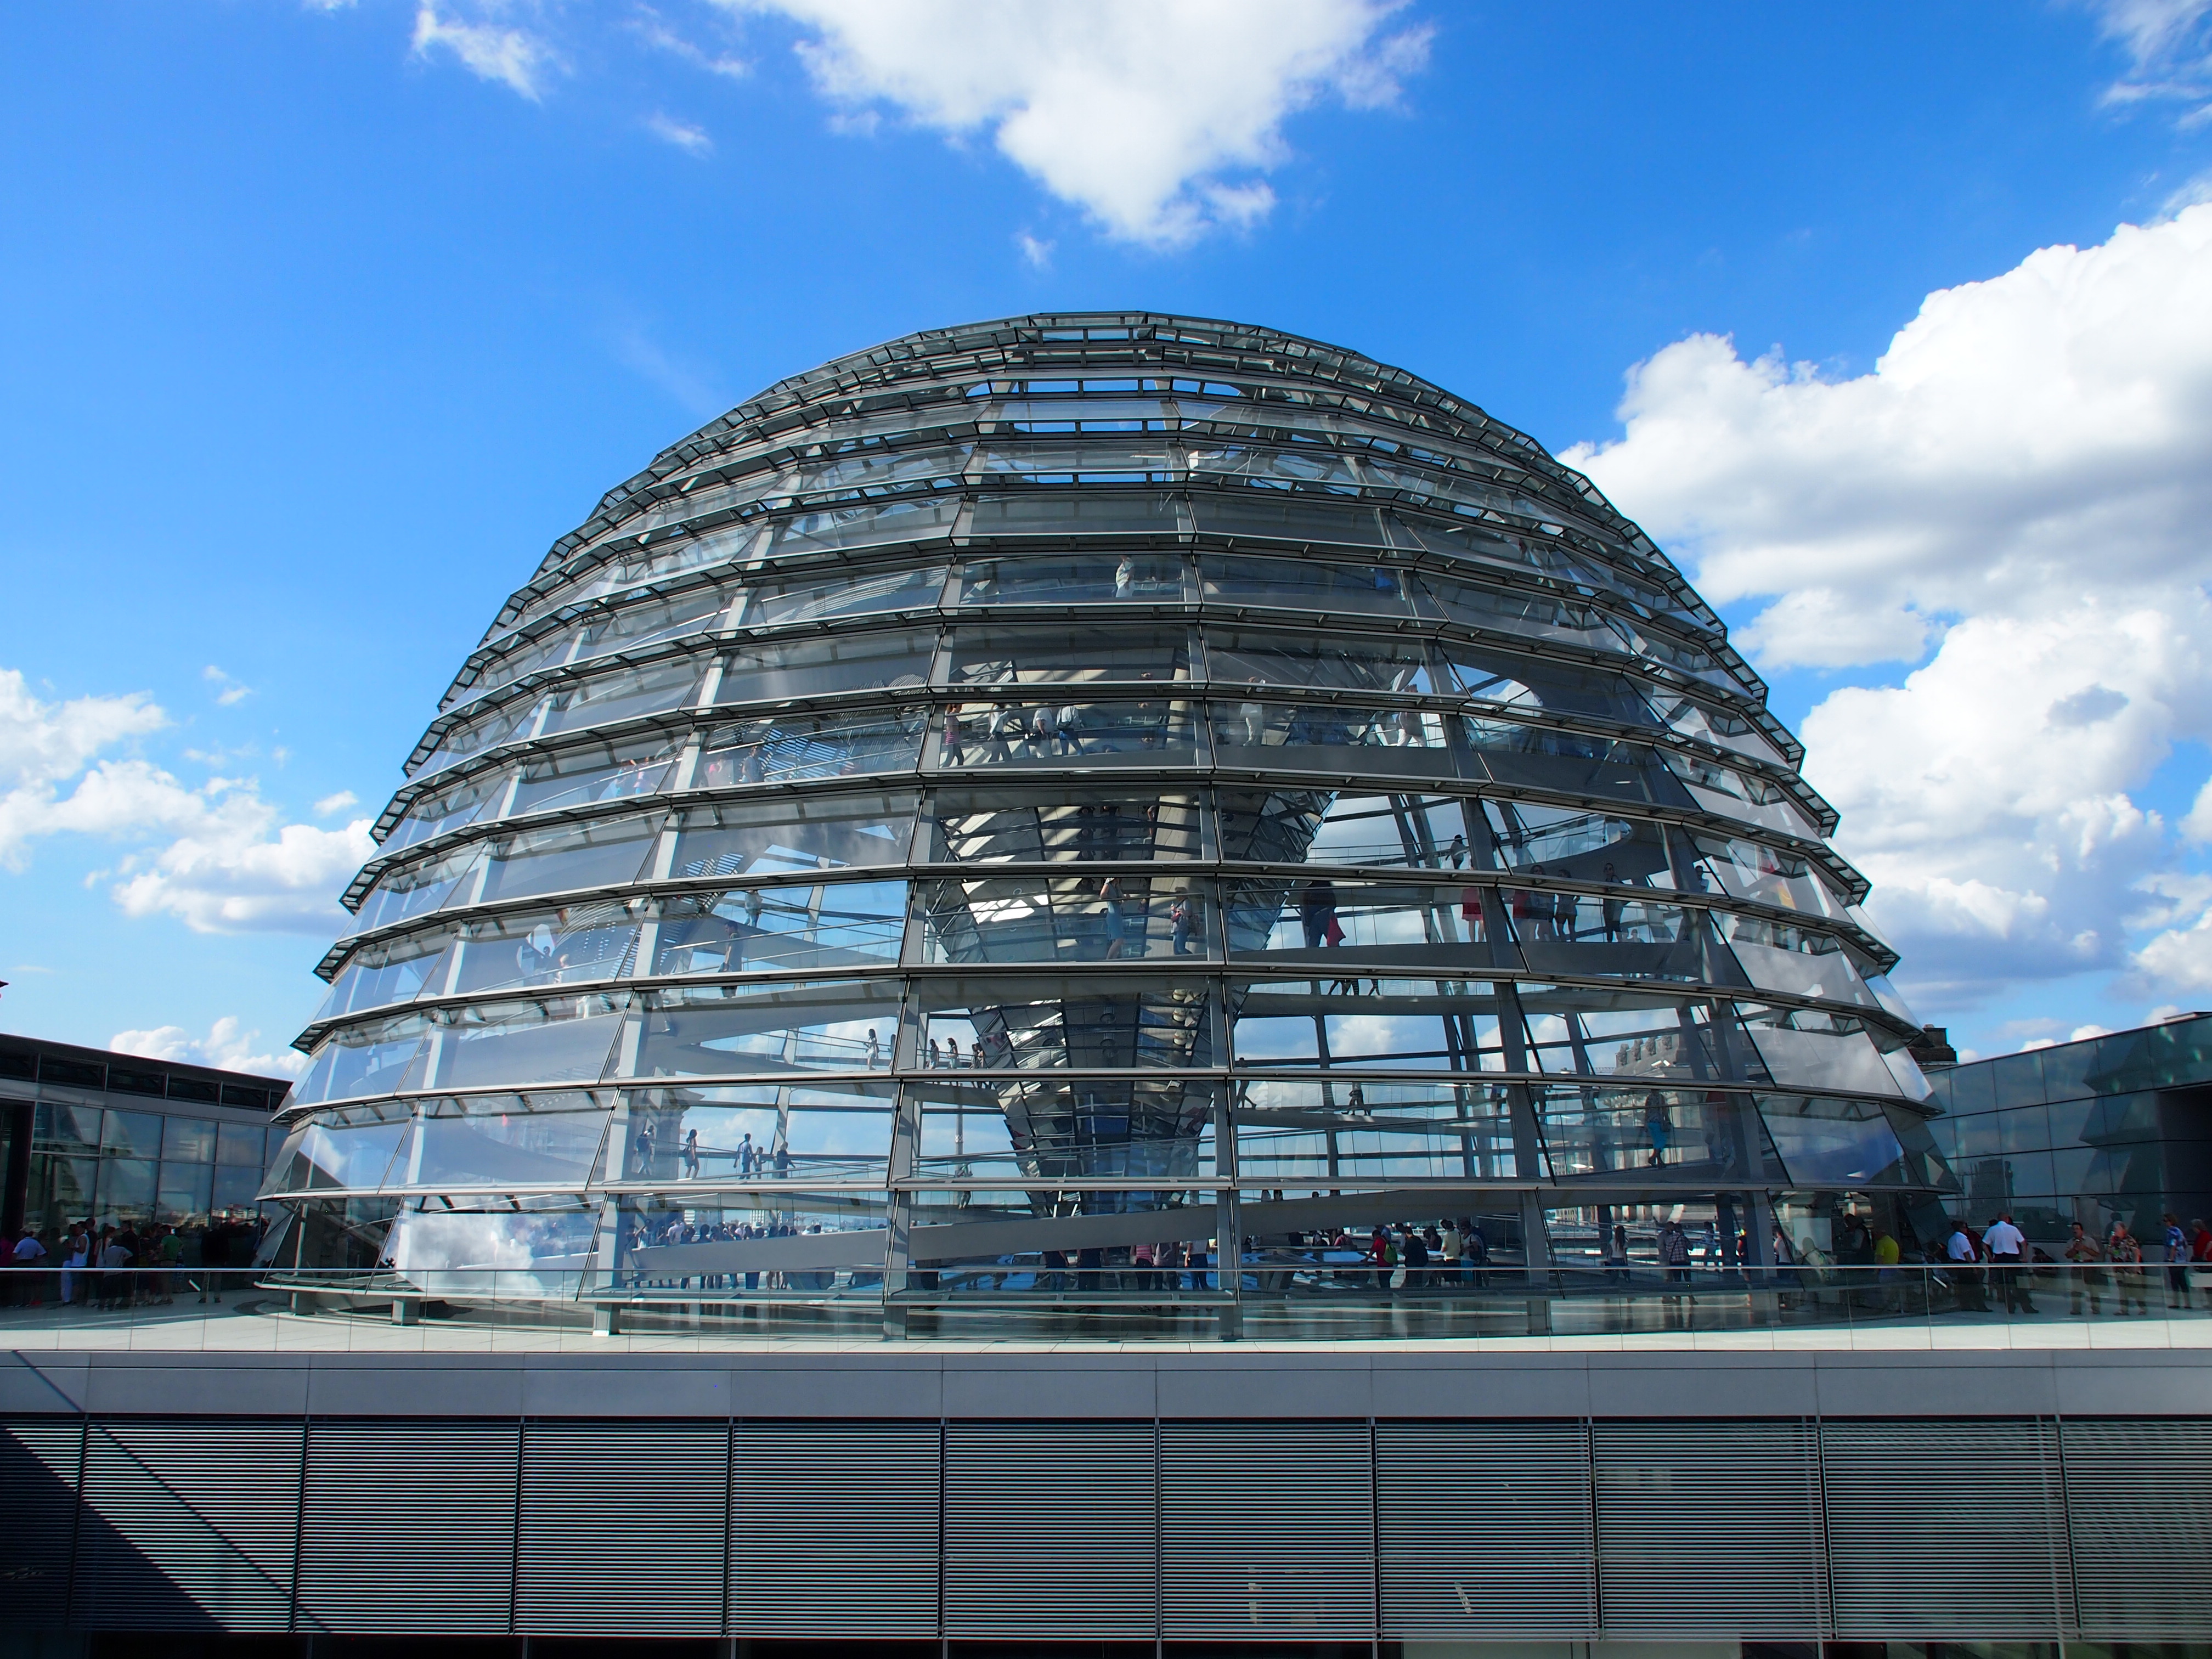 Kuppel des Reichstags